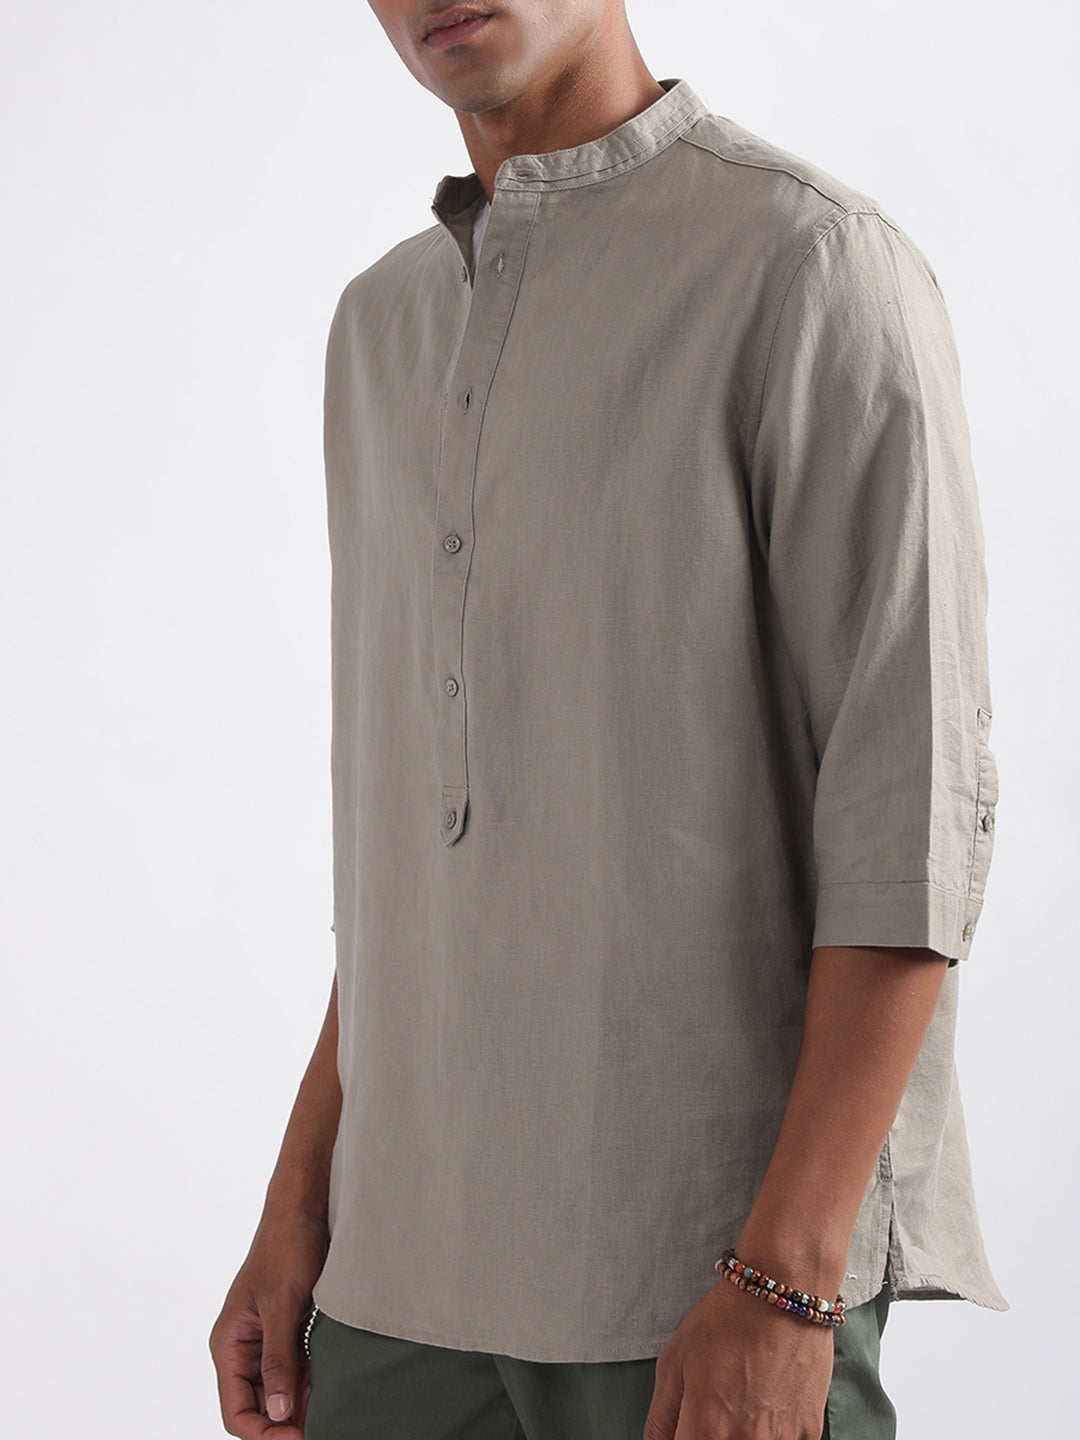 Antony Morato Band Collar Cotton Linen Casual Shirt